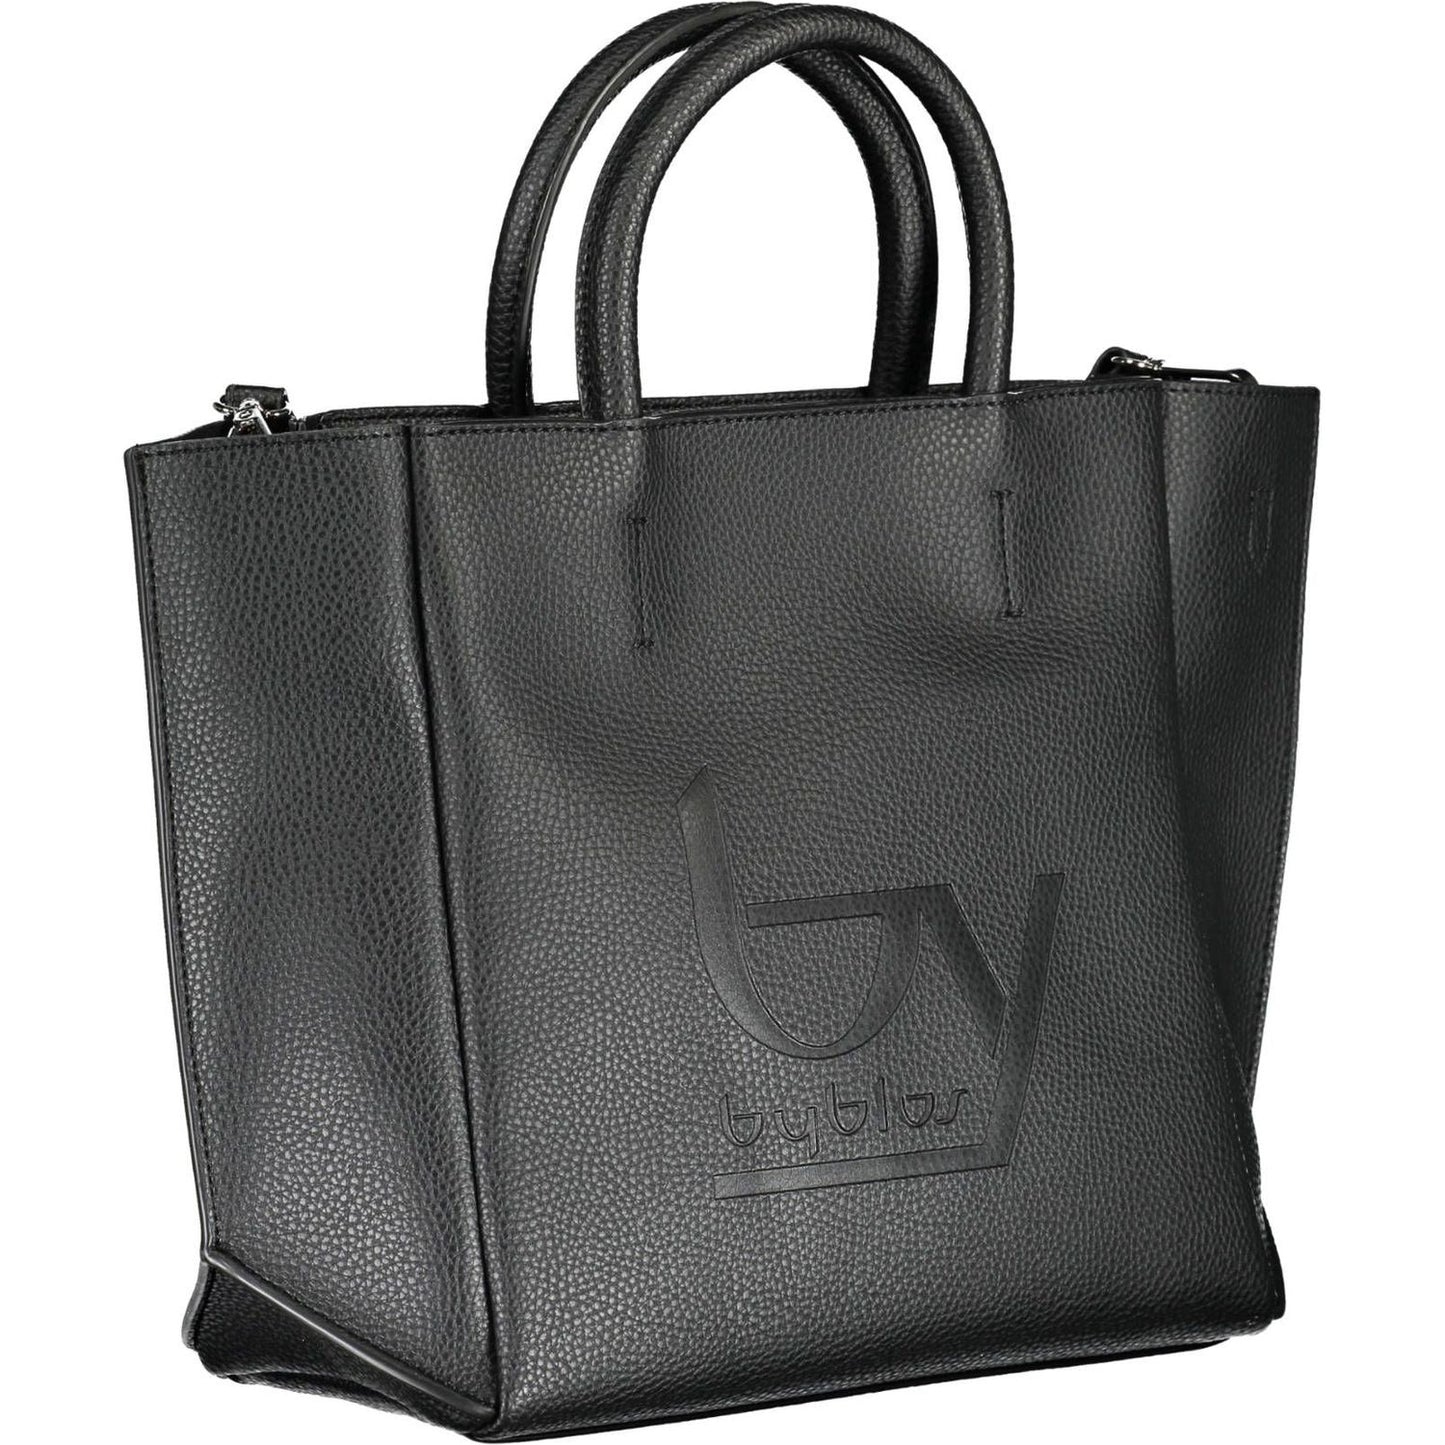 BYBLOS | Elegant Black Handbag with Chic Print| McRichard Designer Brands   